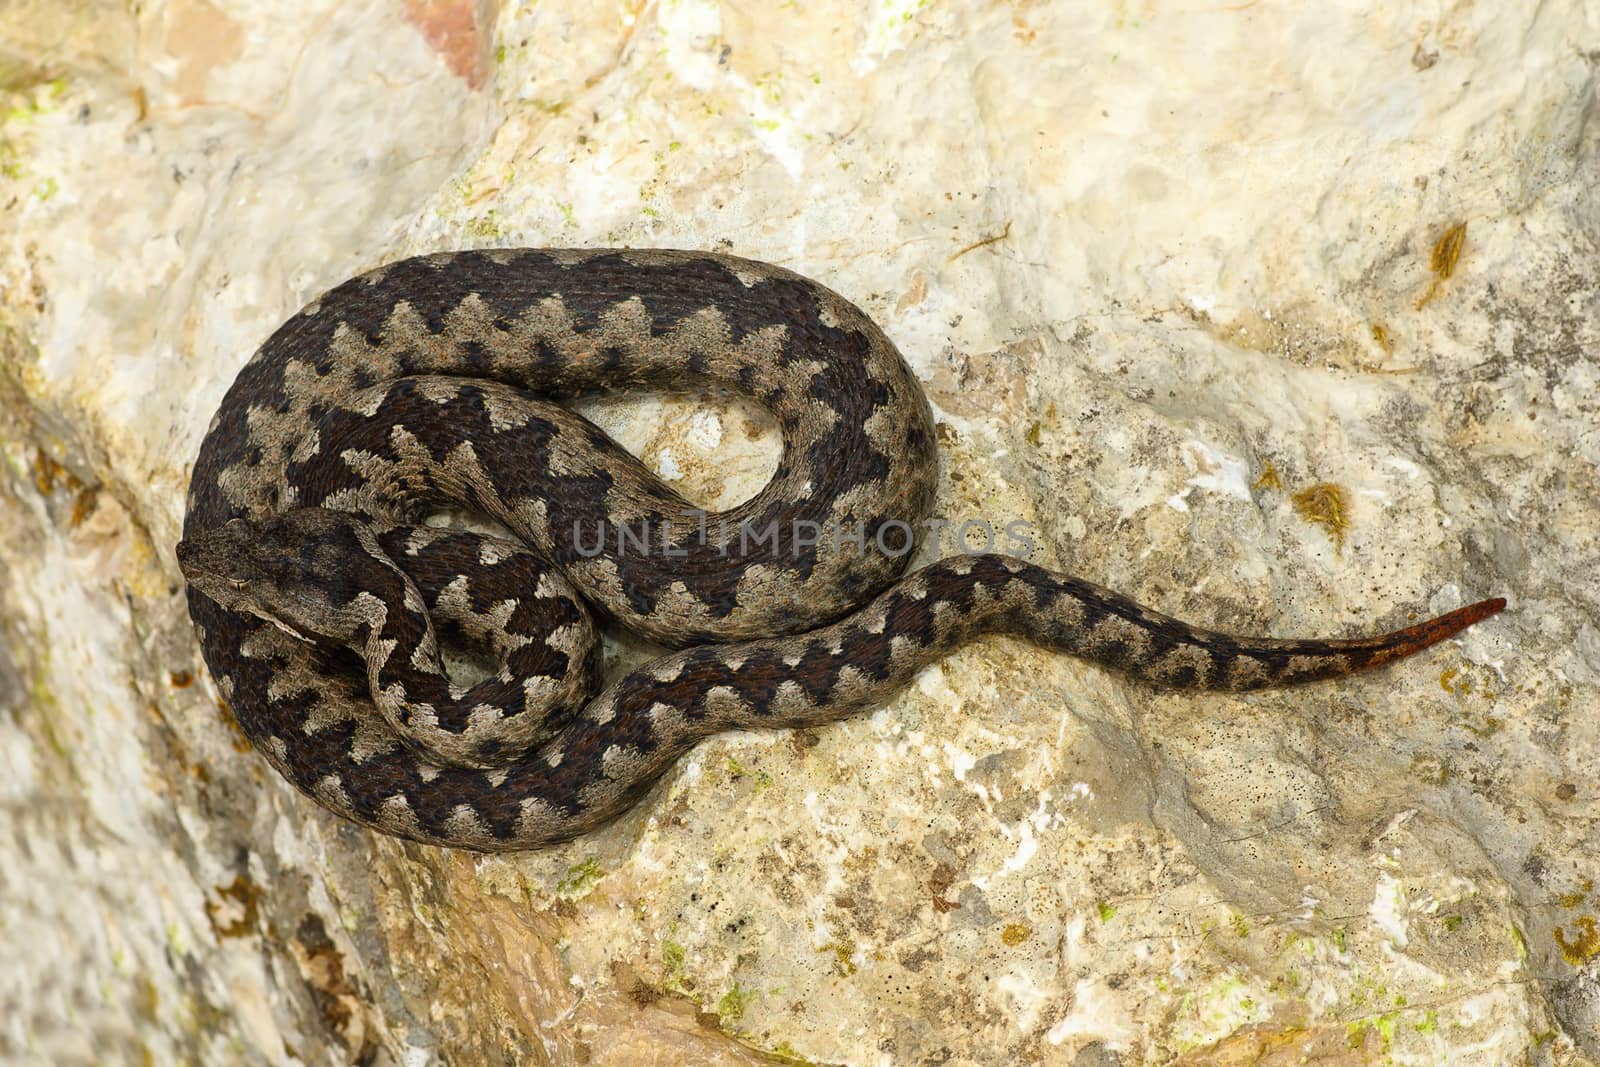 toxic european snake on stone by taviphoto